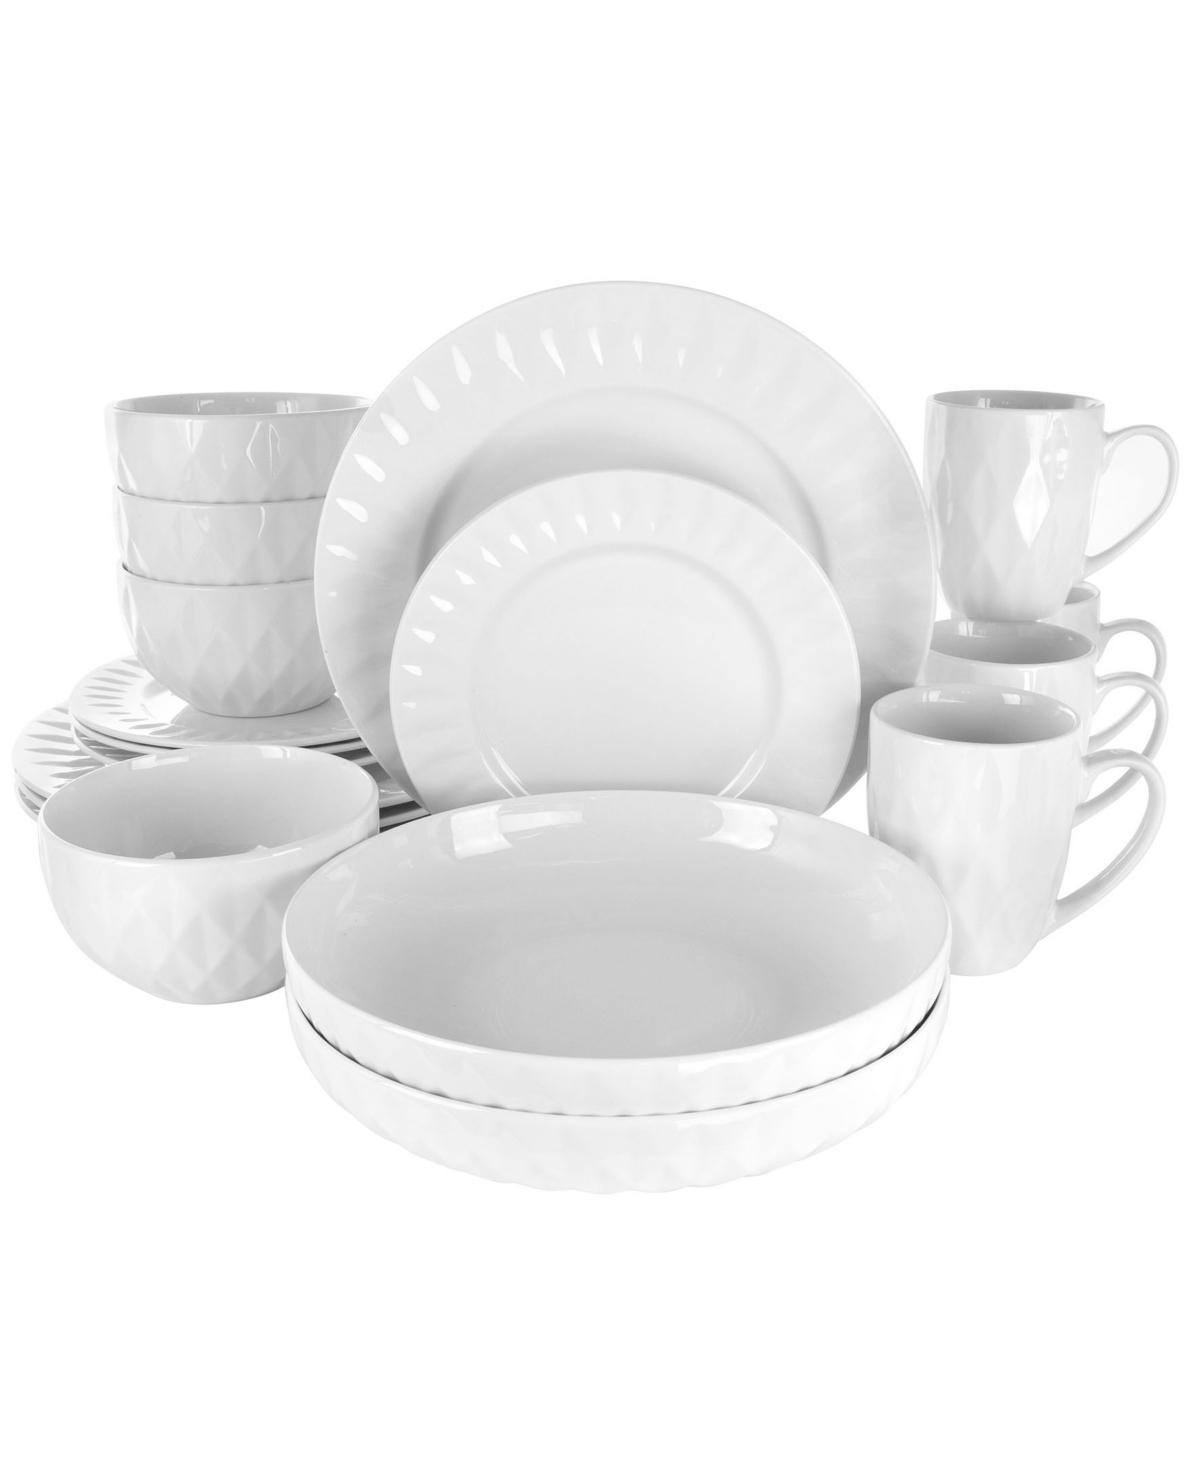 Sienna 18 Piece Dinnerware Set, Service for 4 - White